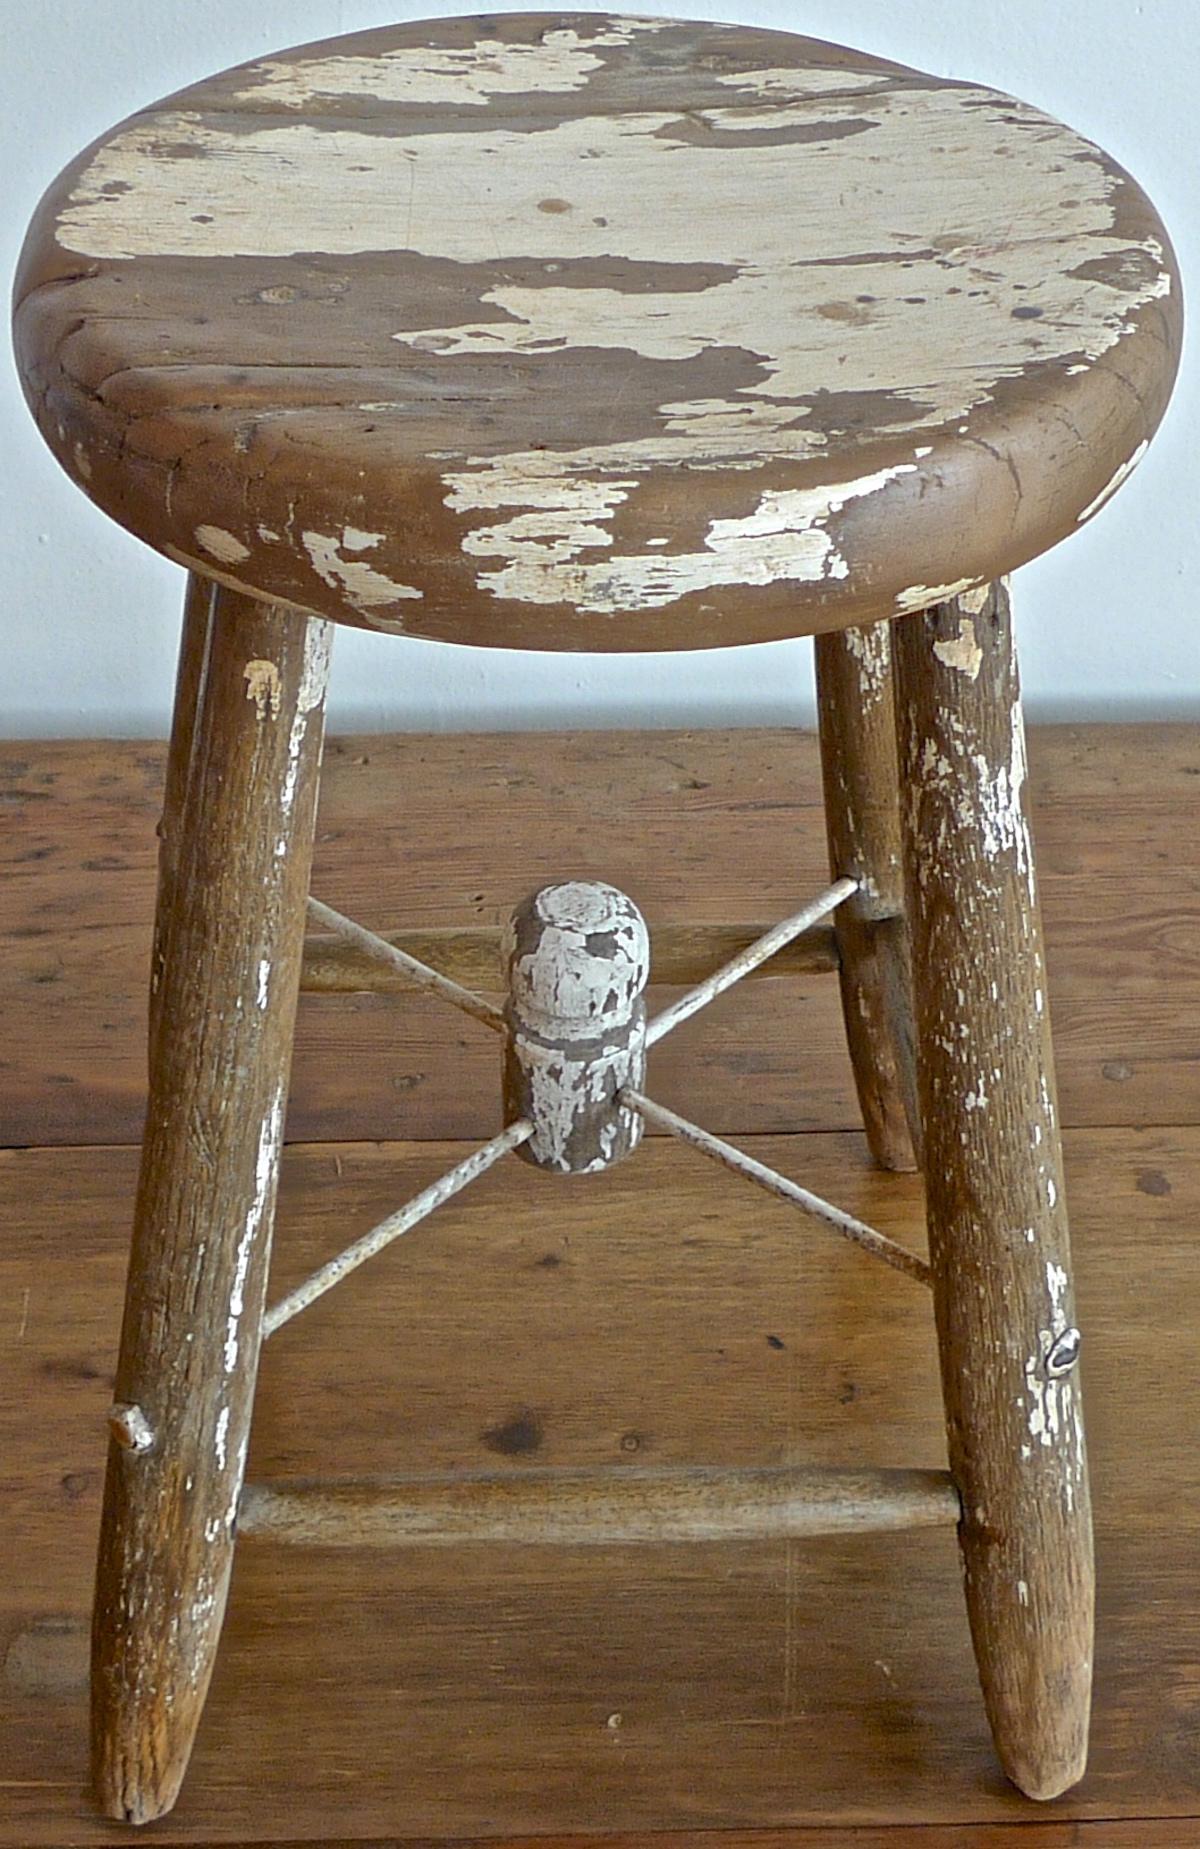 French 19th century four legged round milking stool.